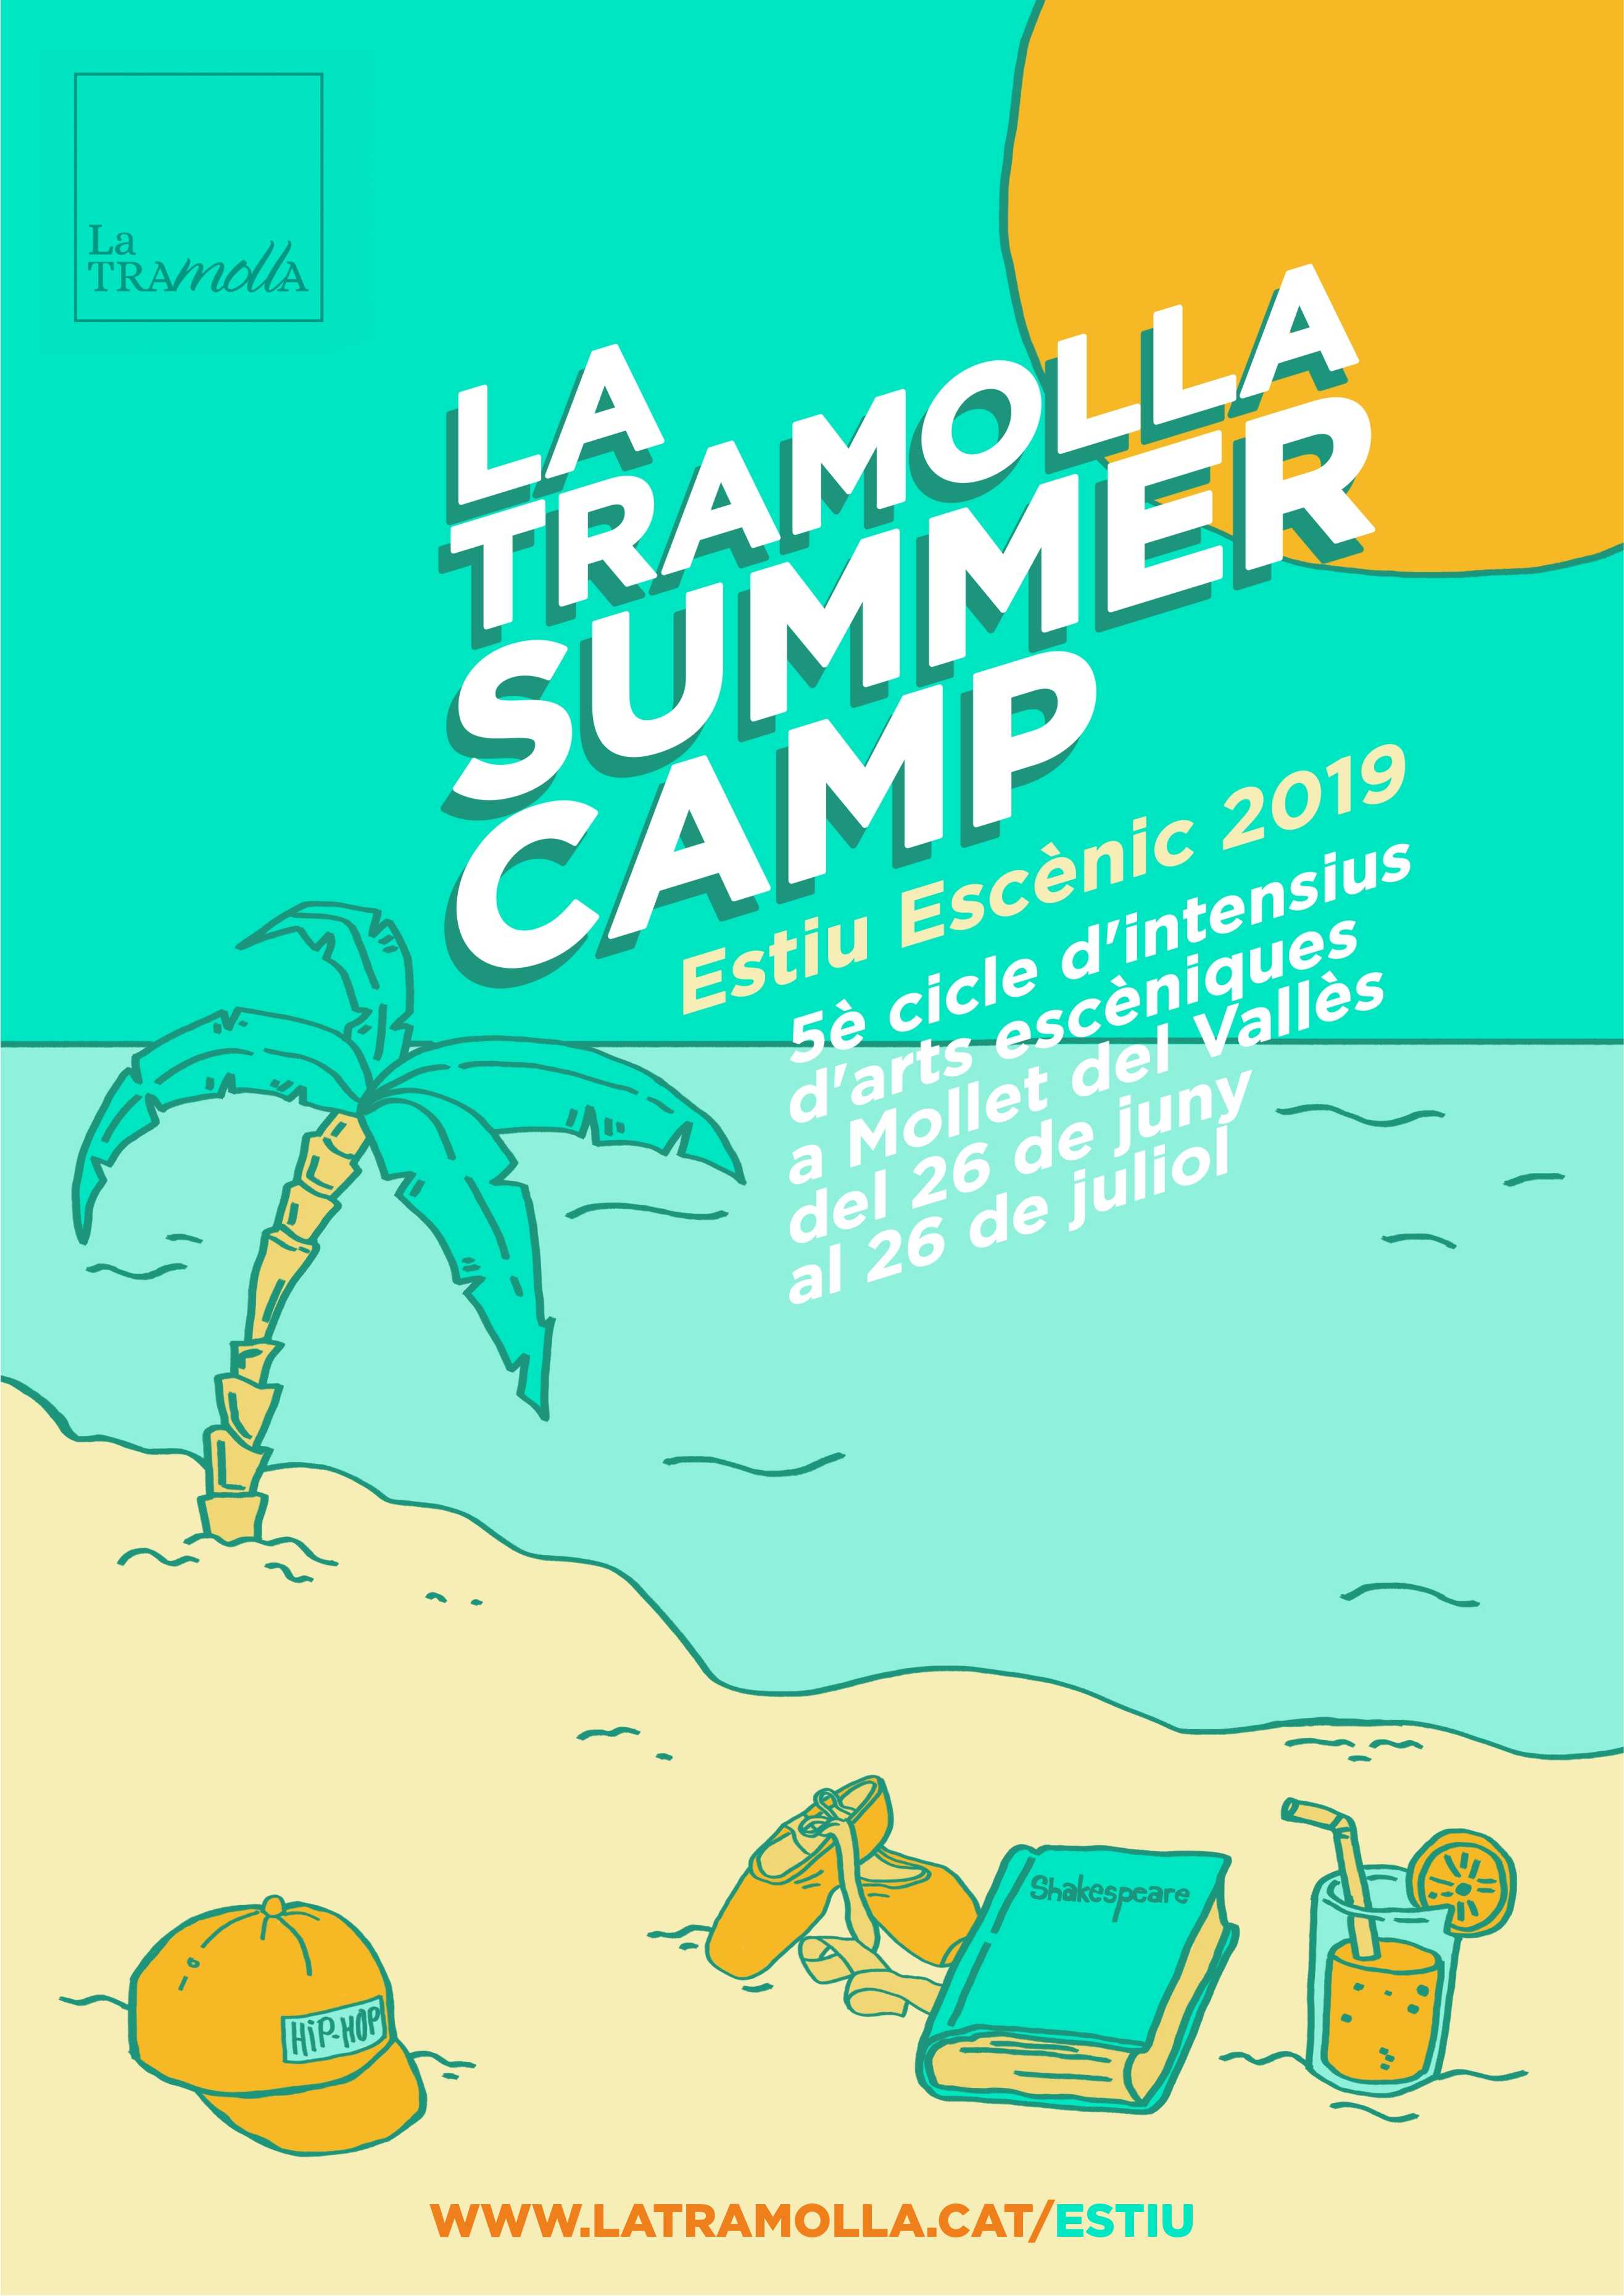 Estiu Escènic 2019: La Tramolla Summer Camp!